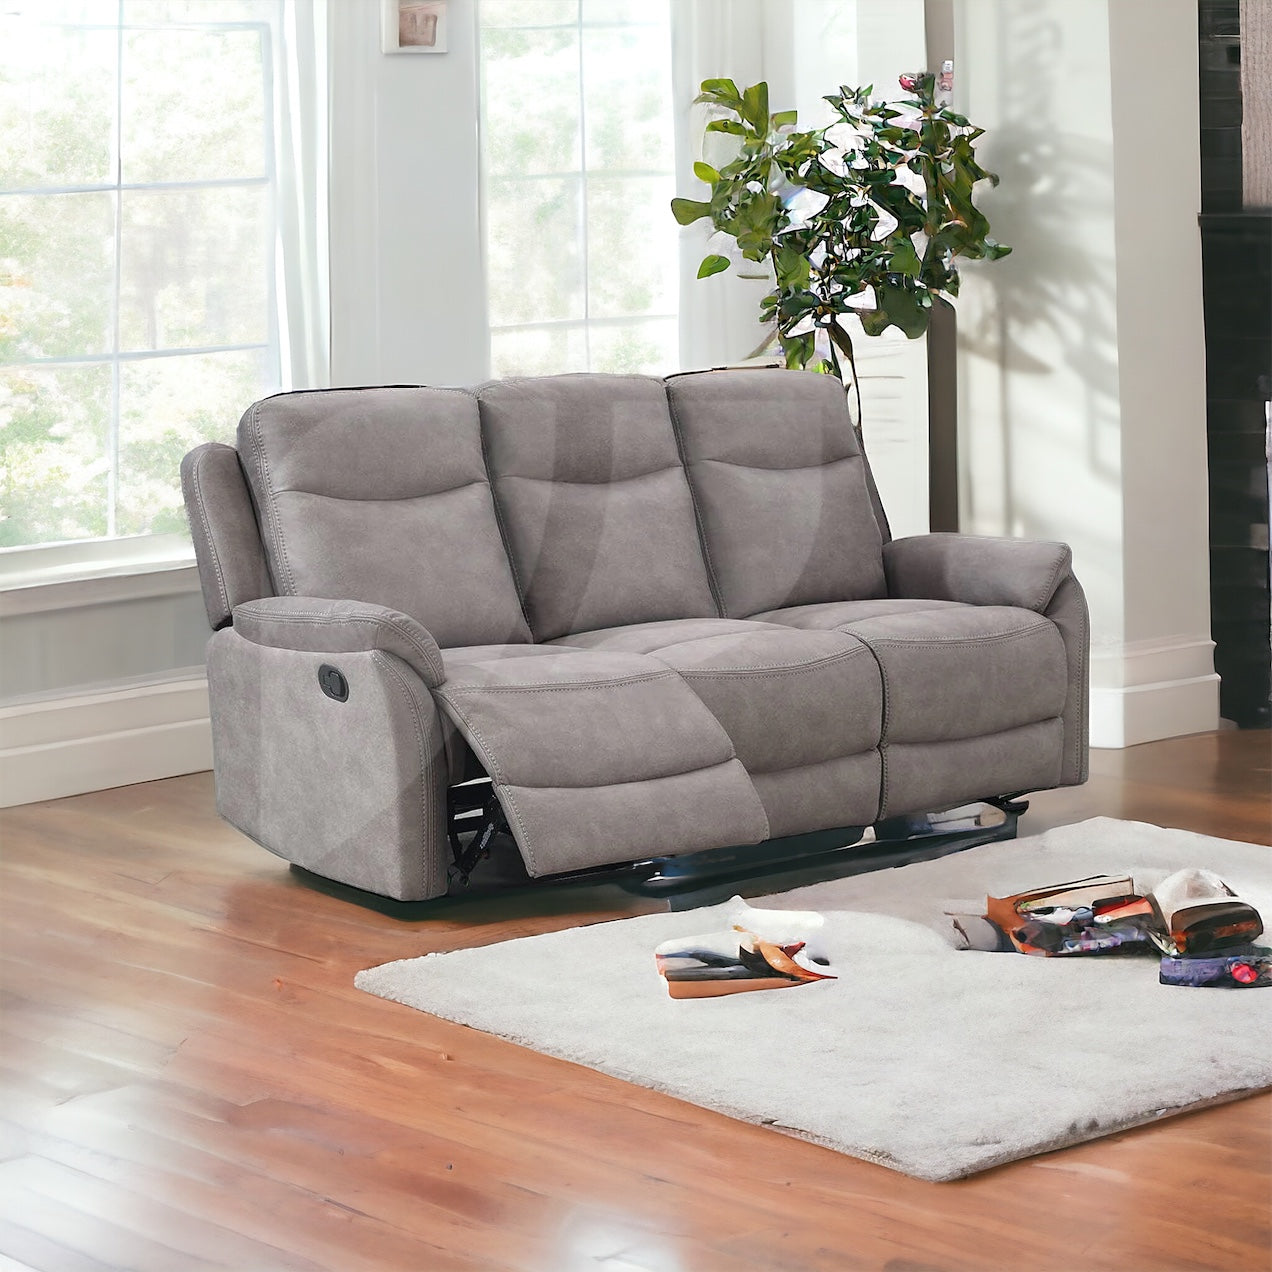 Quebec Sofa Sets - Stone Grey